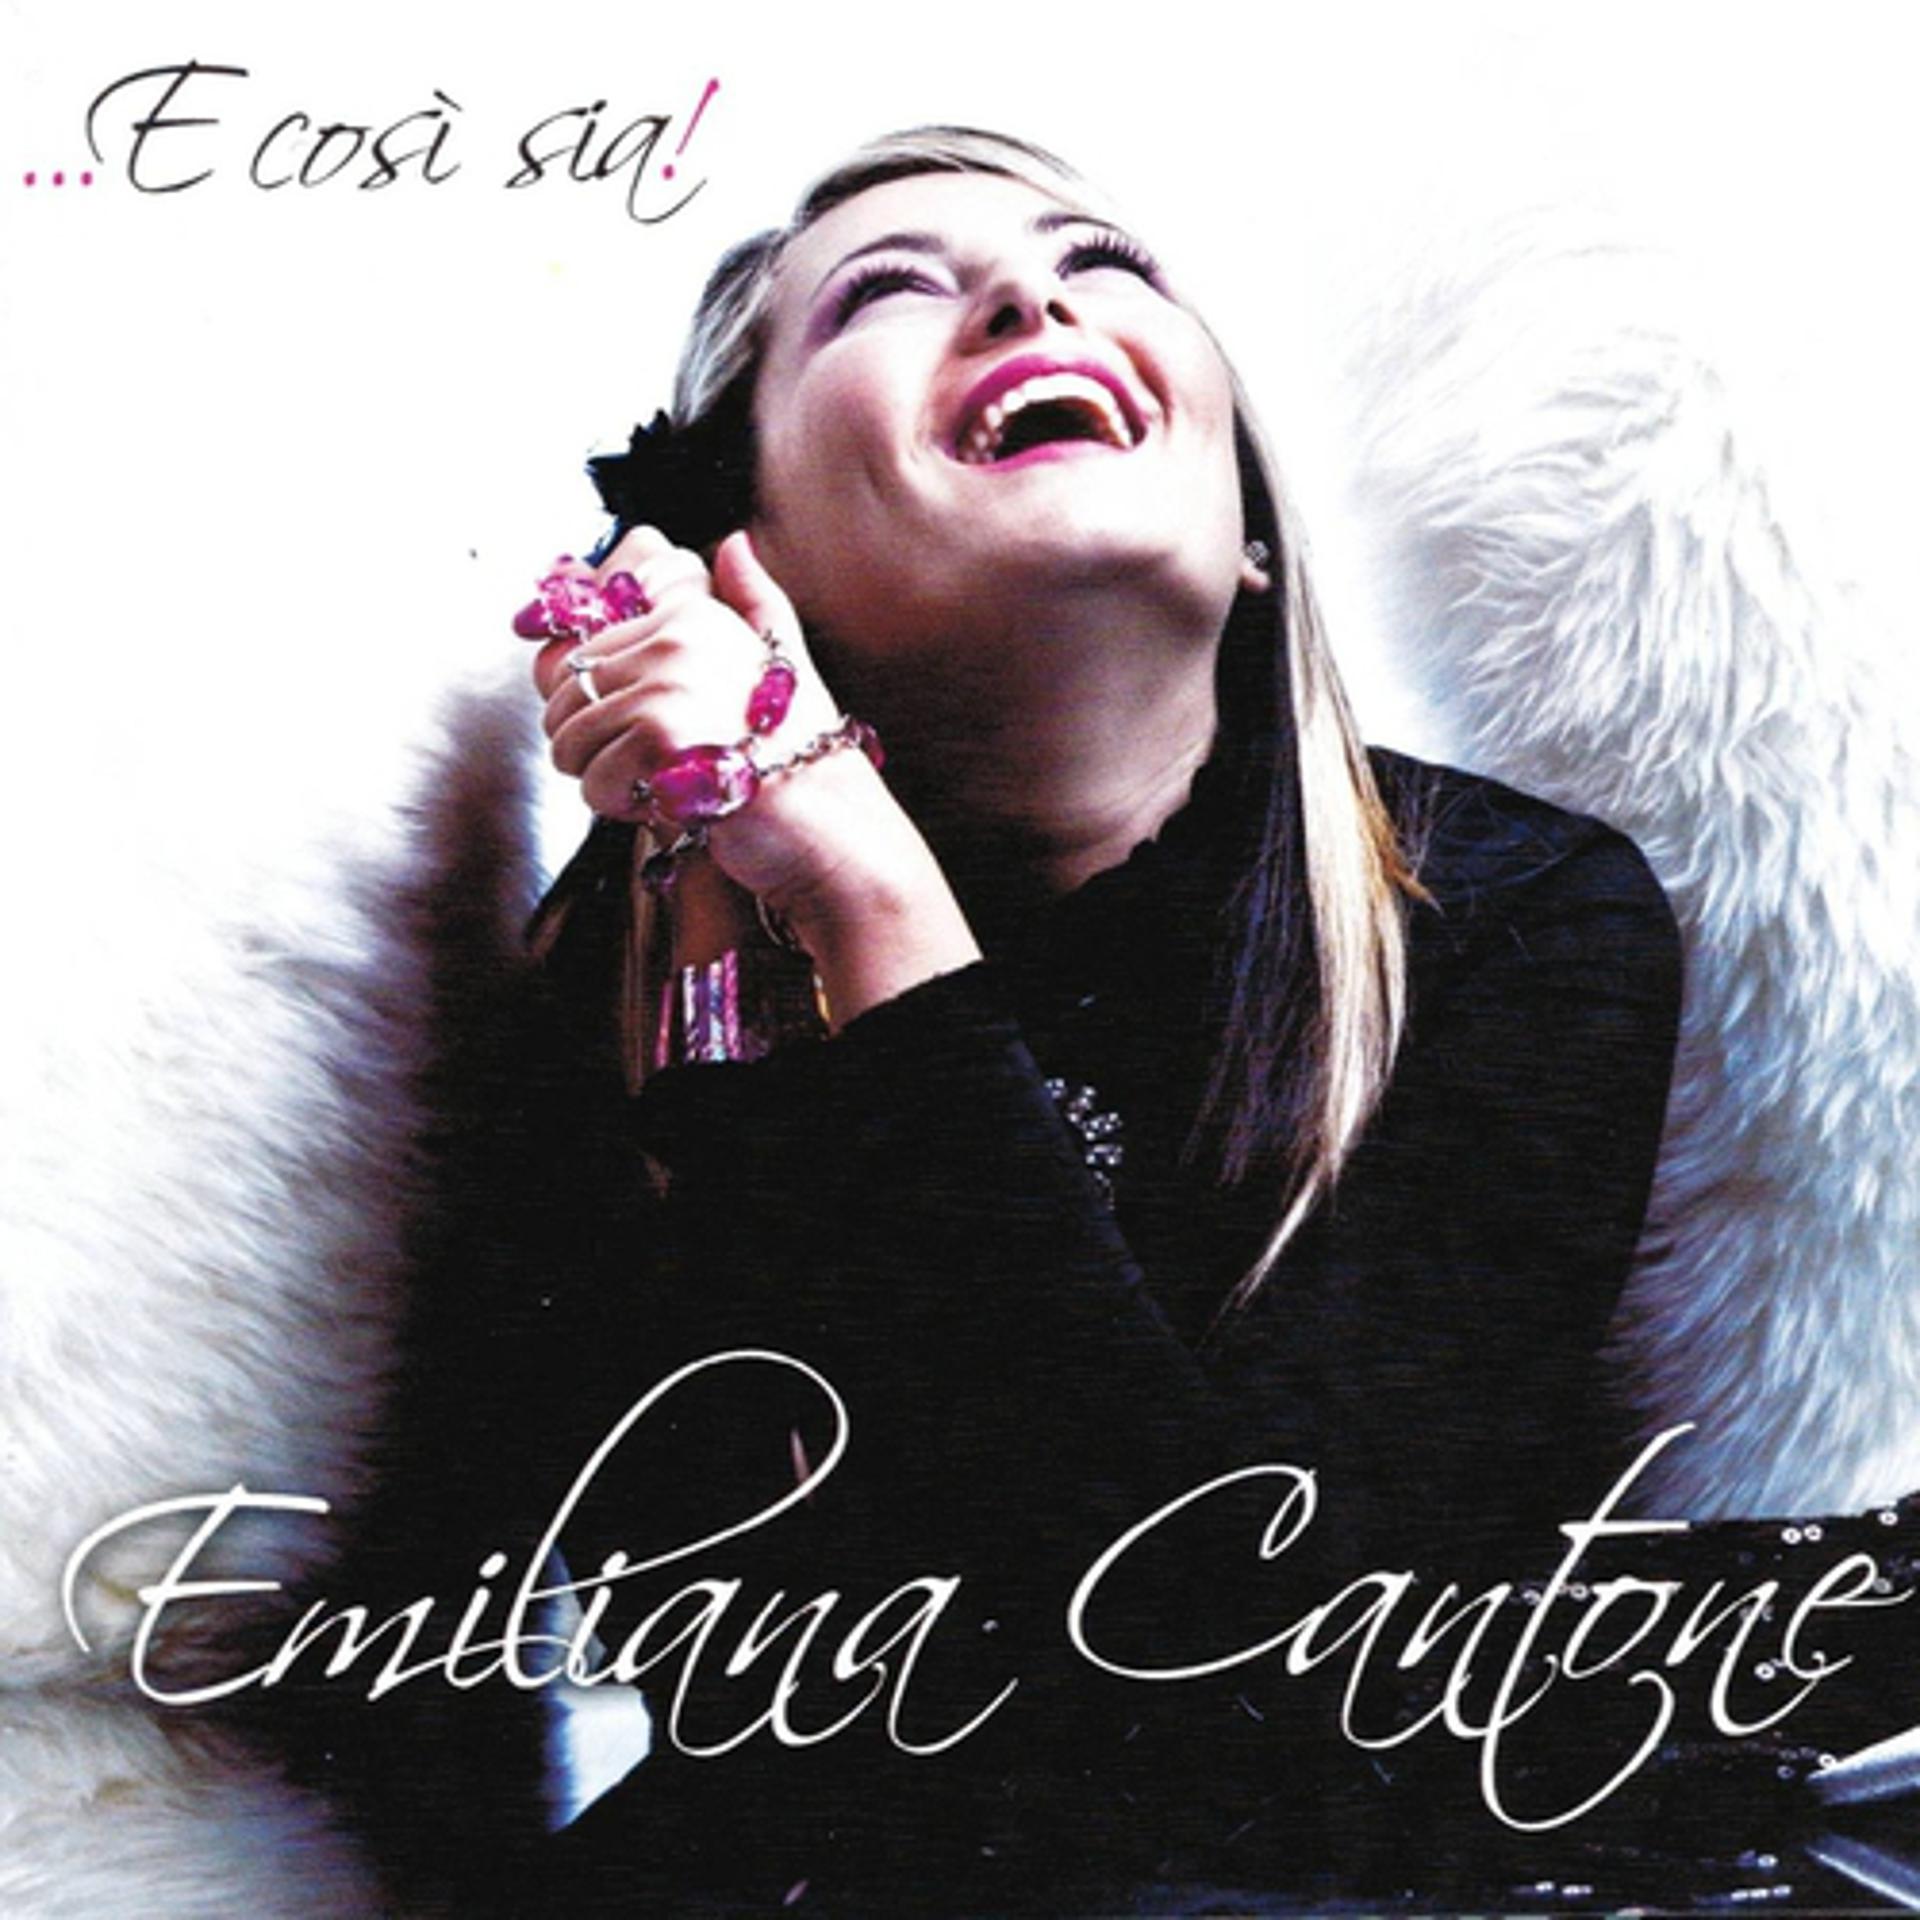 Постер к треку Emiliana Cantone - Ti vorrei amare